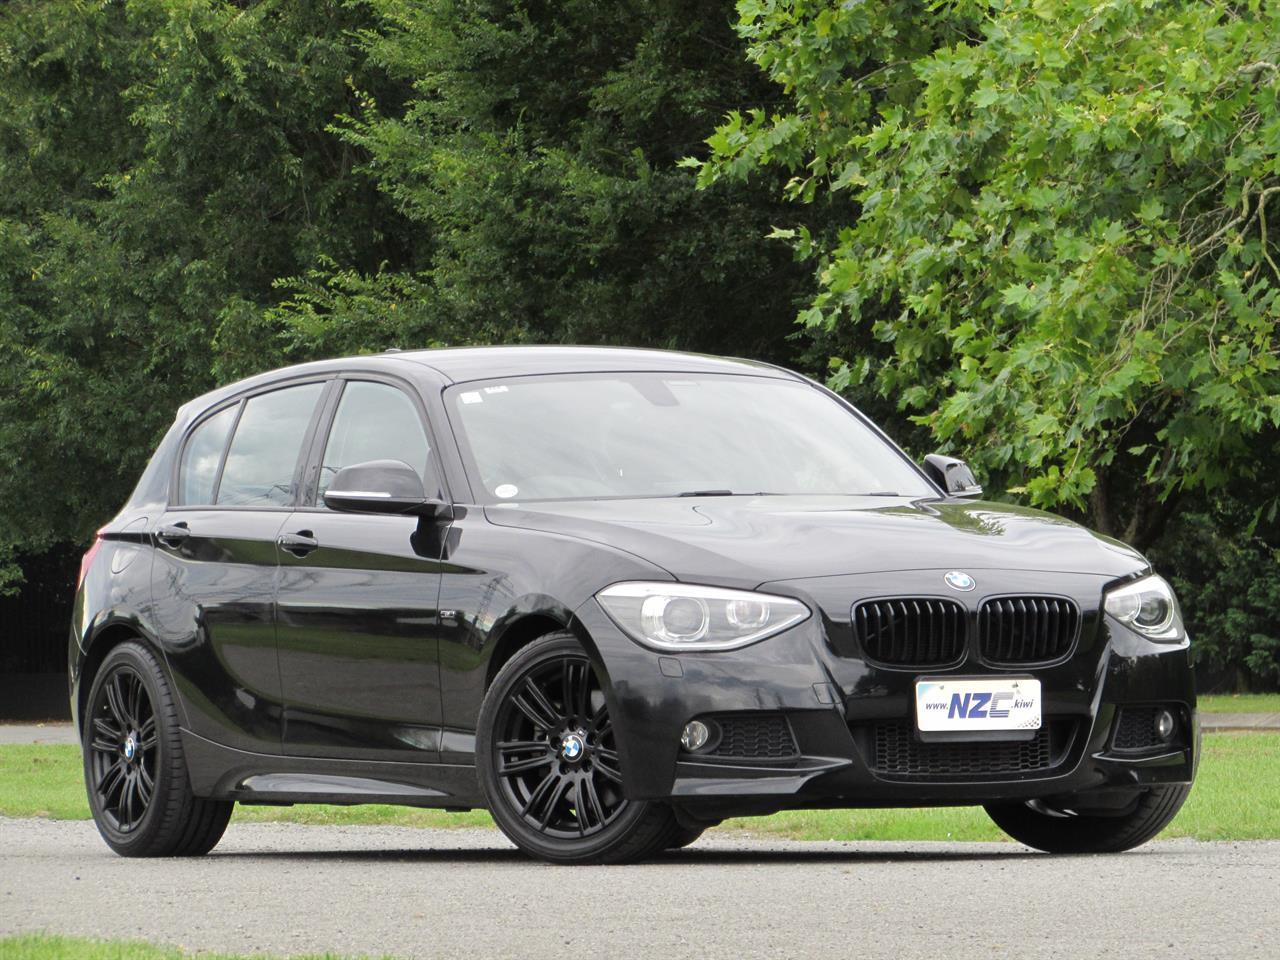 2014 BMW 116i M SPORT +TWIN POWER TURBO+ 84 KM'S